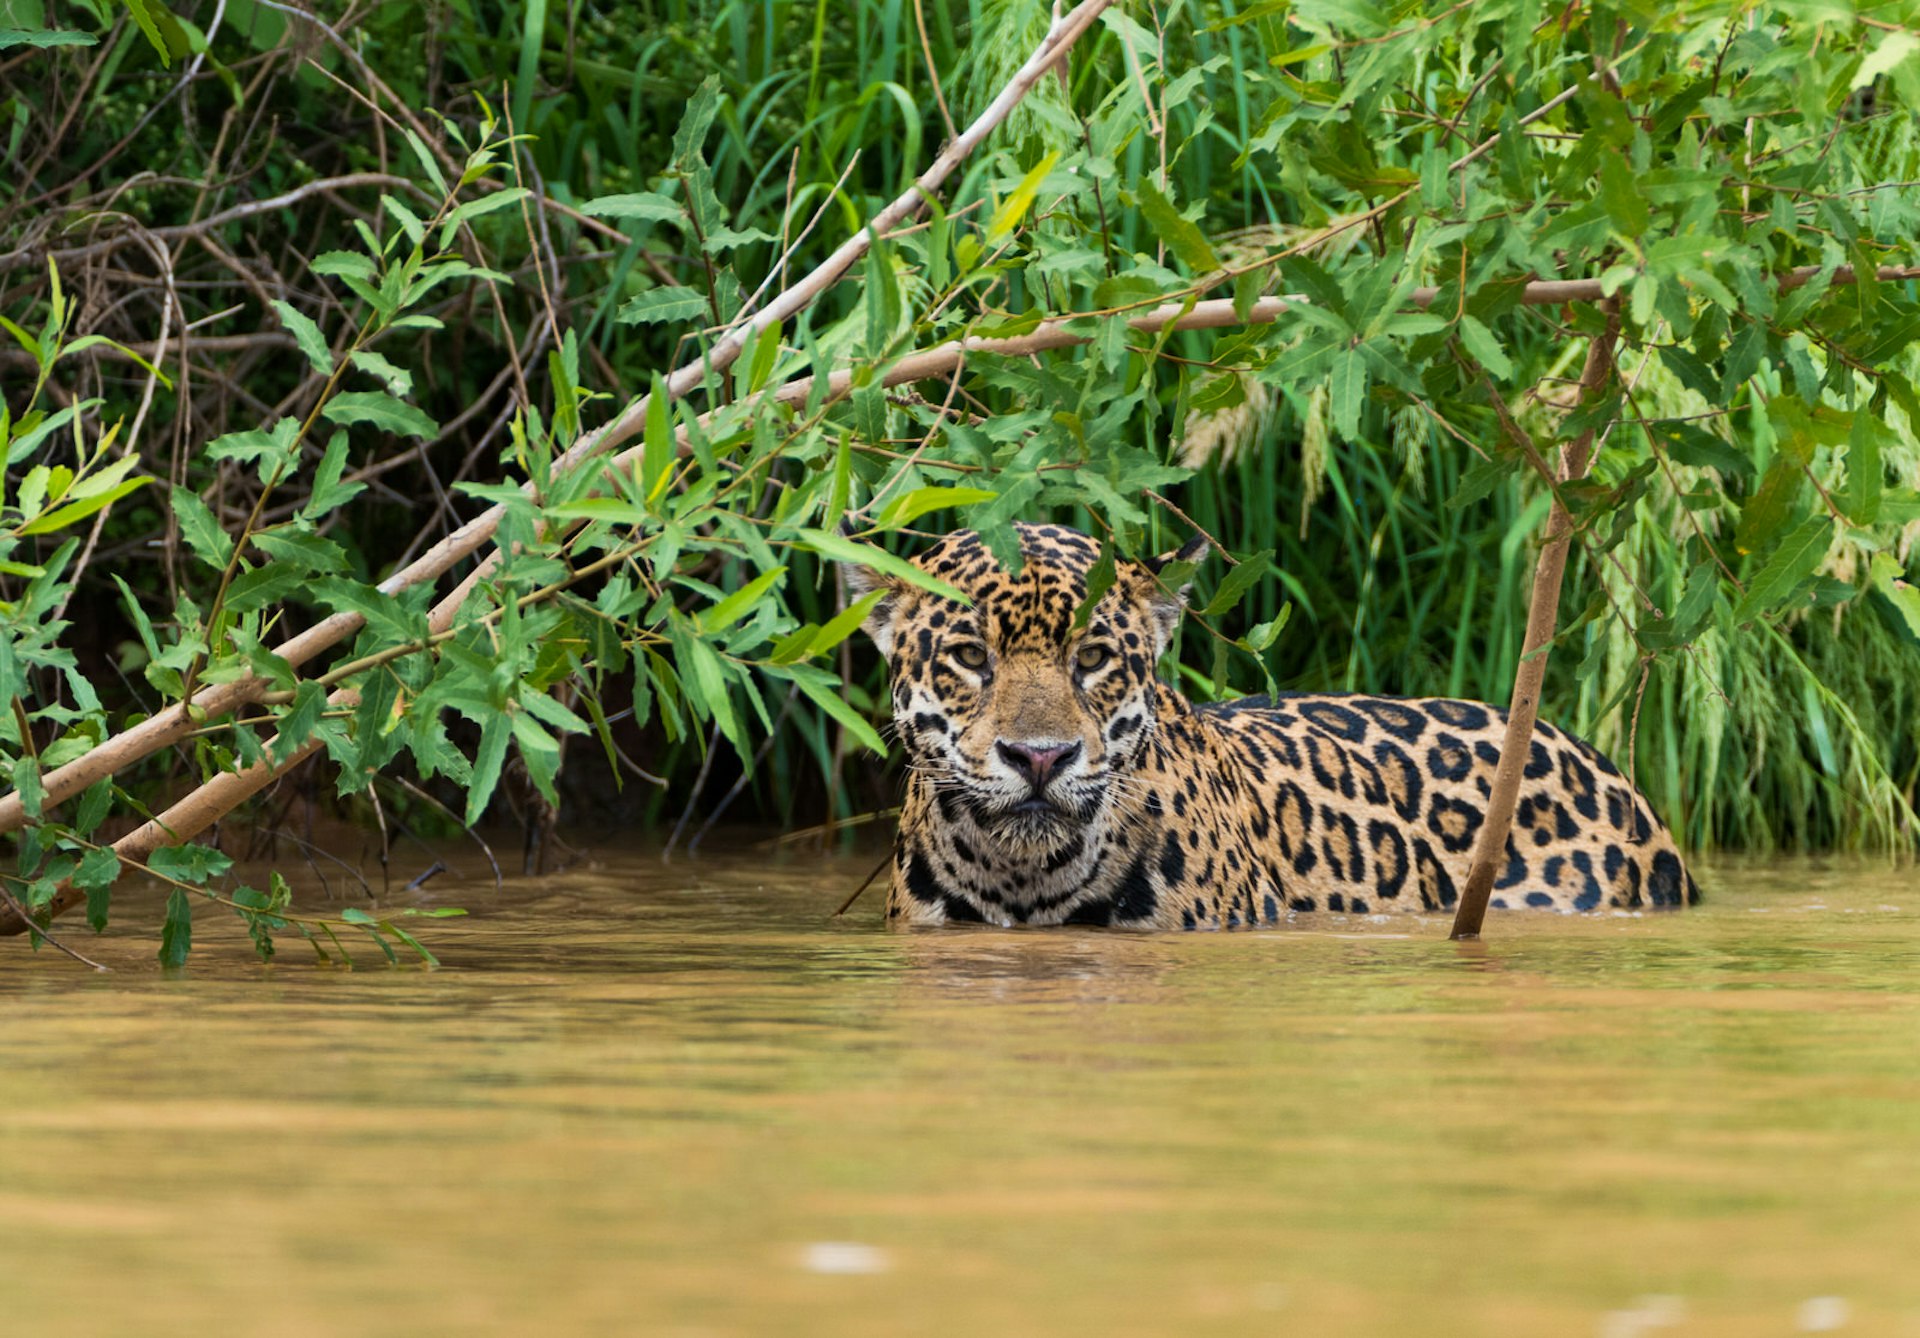 Jaguar in the Pantanal, Brazil © Hans Wagemaker / Shutterstock